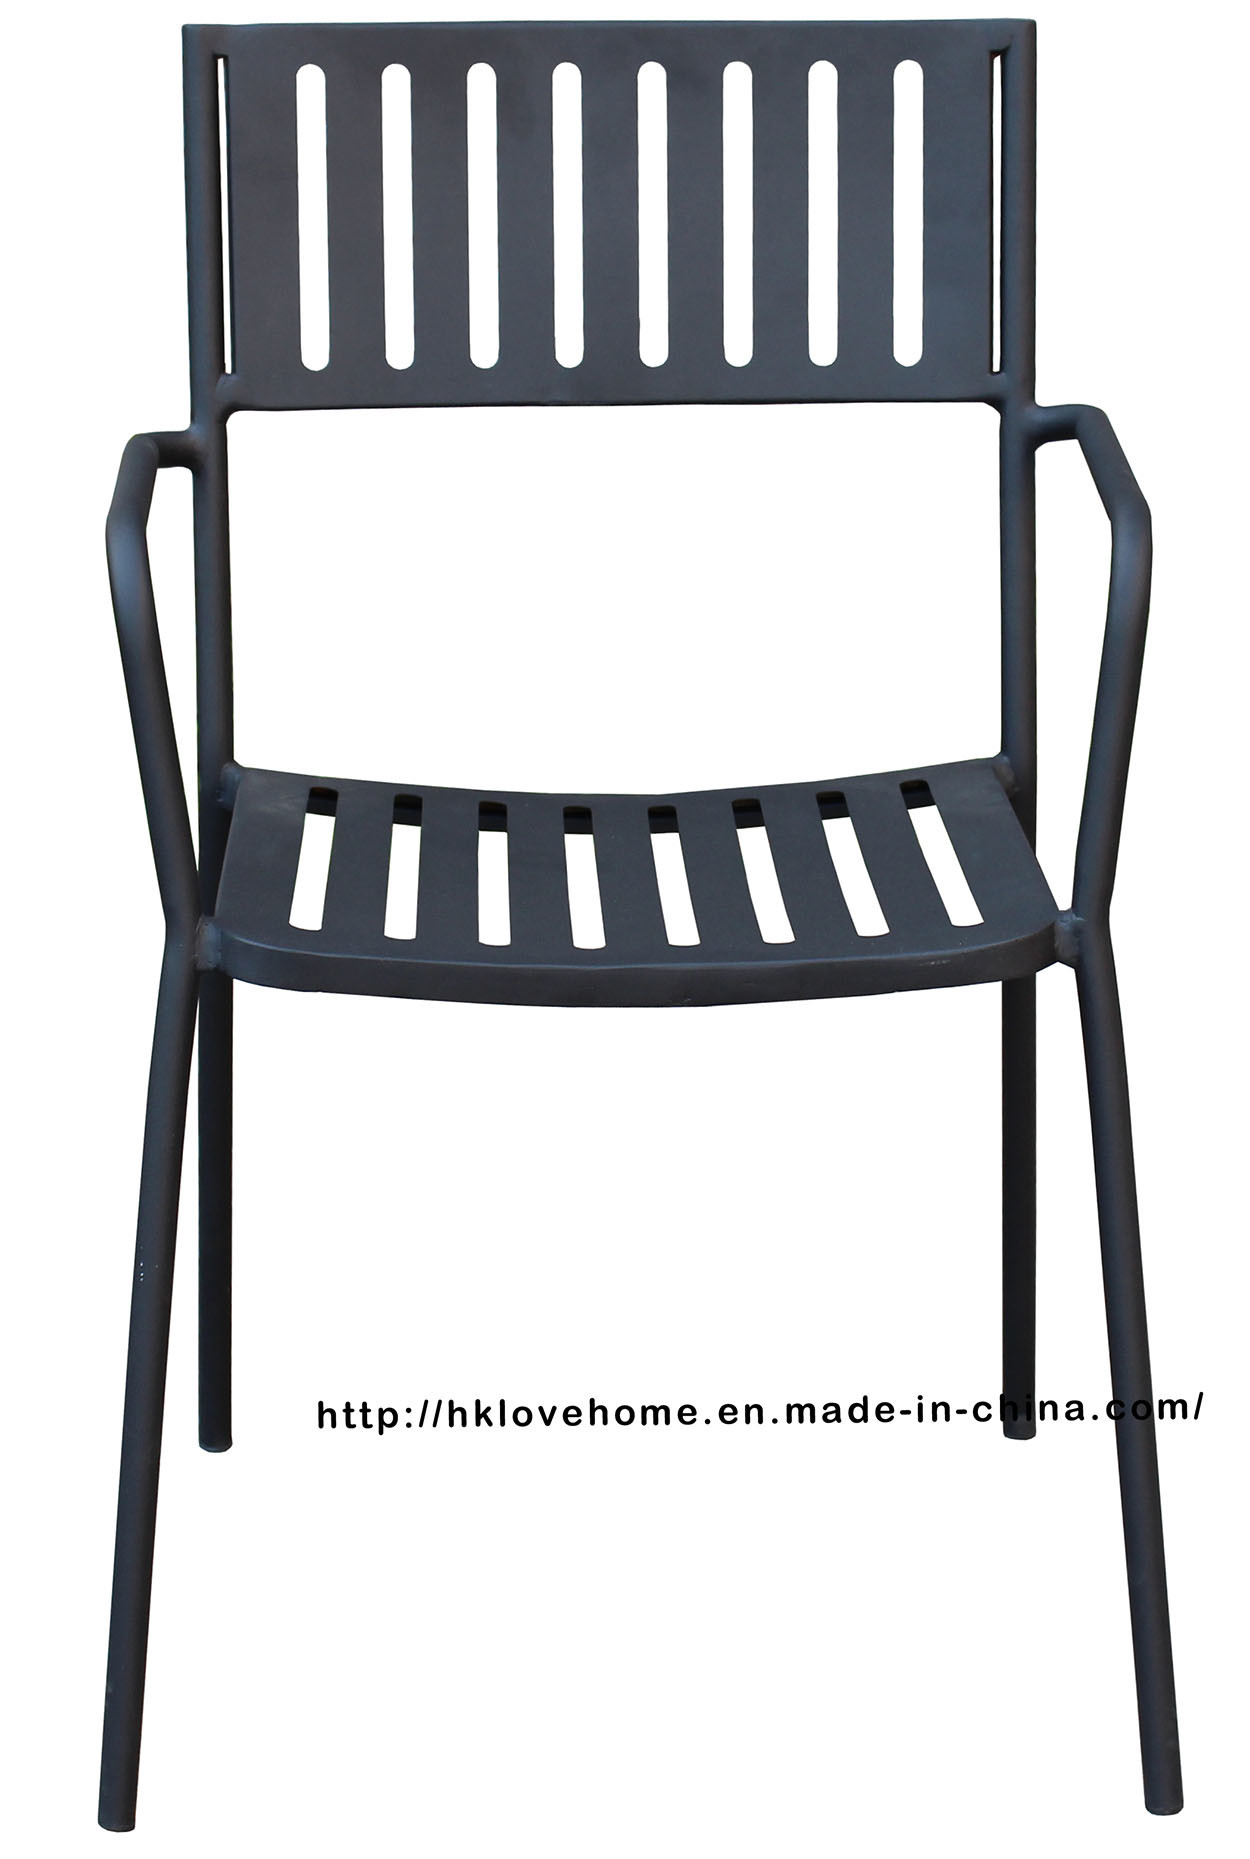 Replica Industrial Tolix Metal Dining Restaurant Armchair Steel Chair